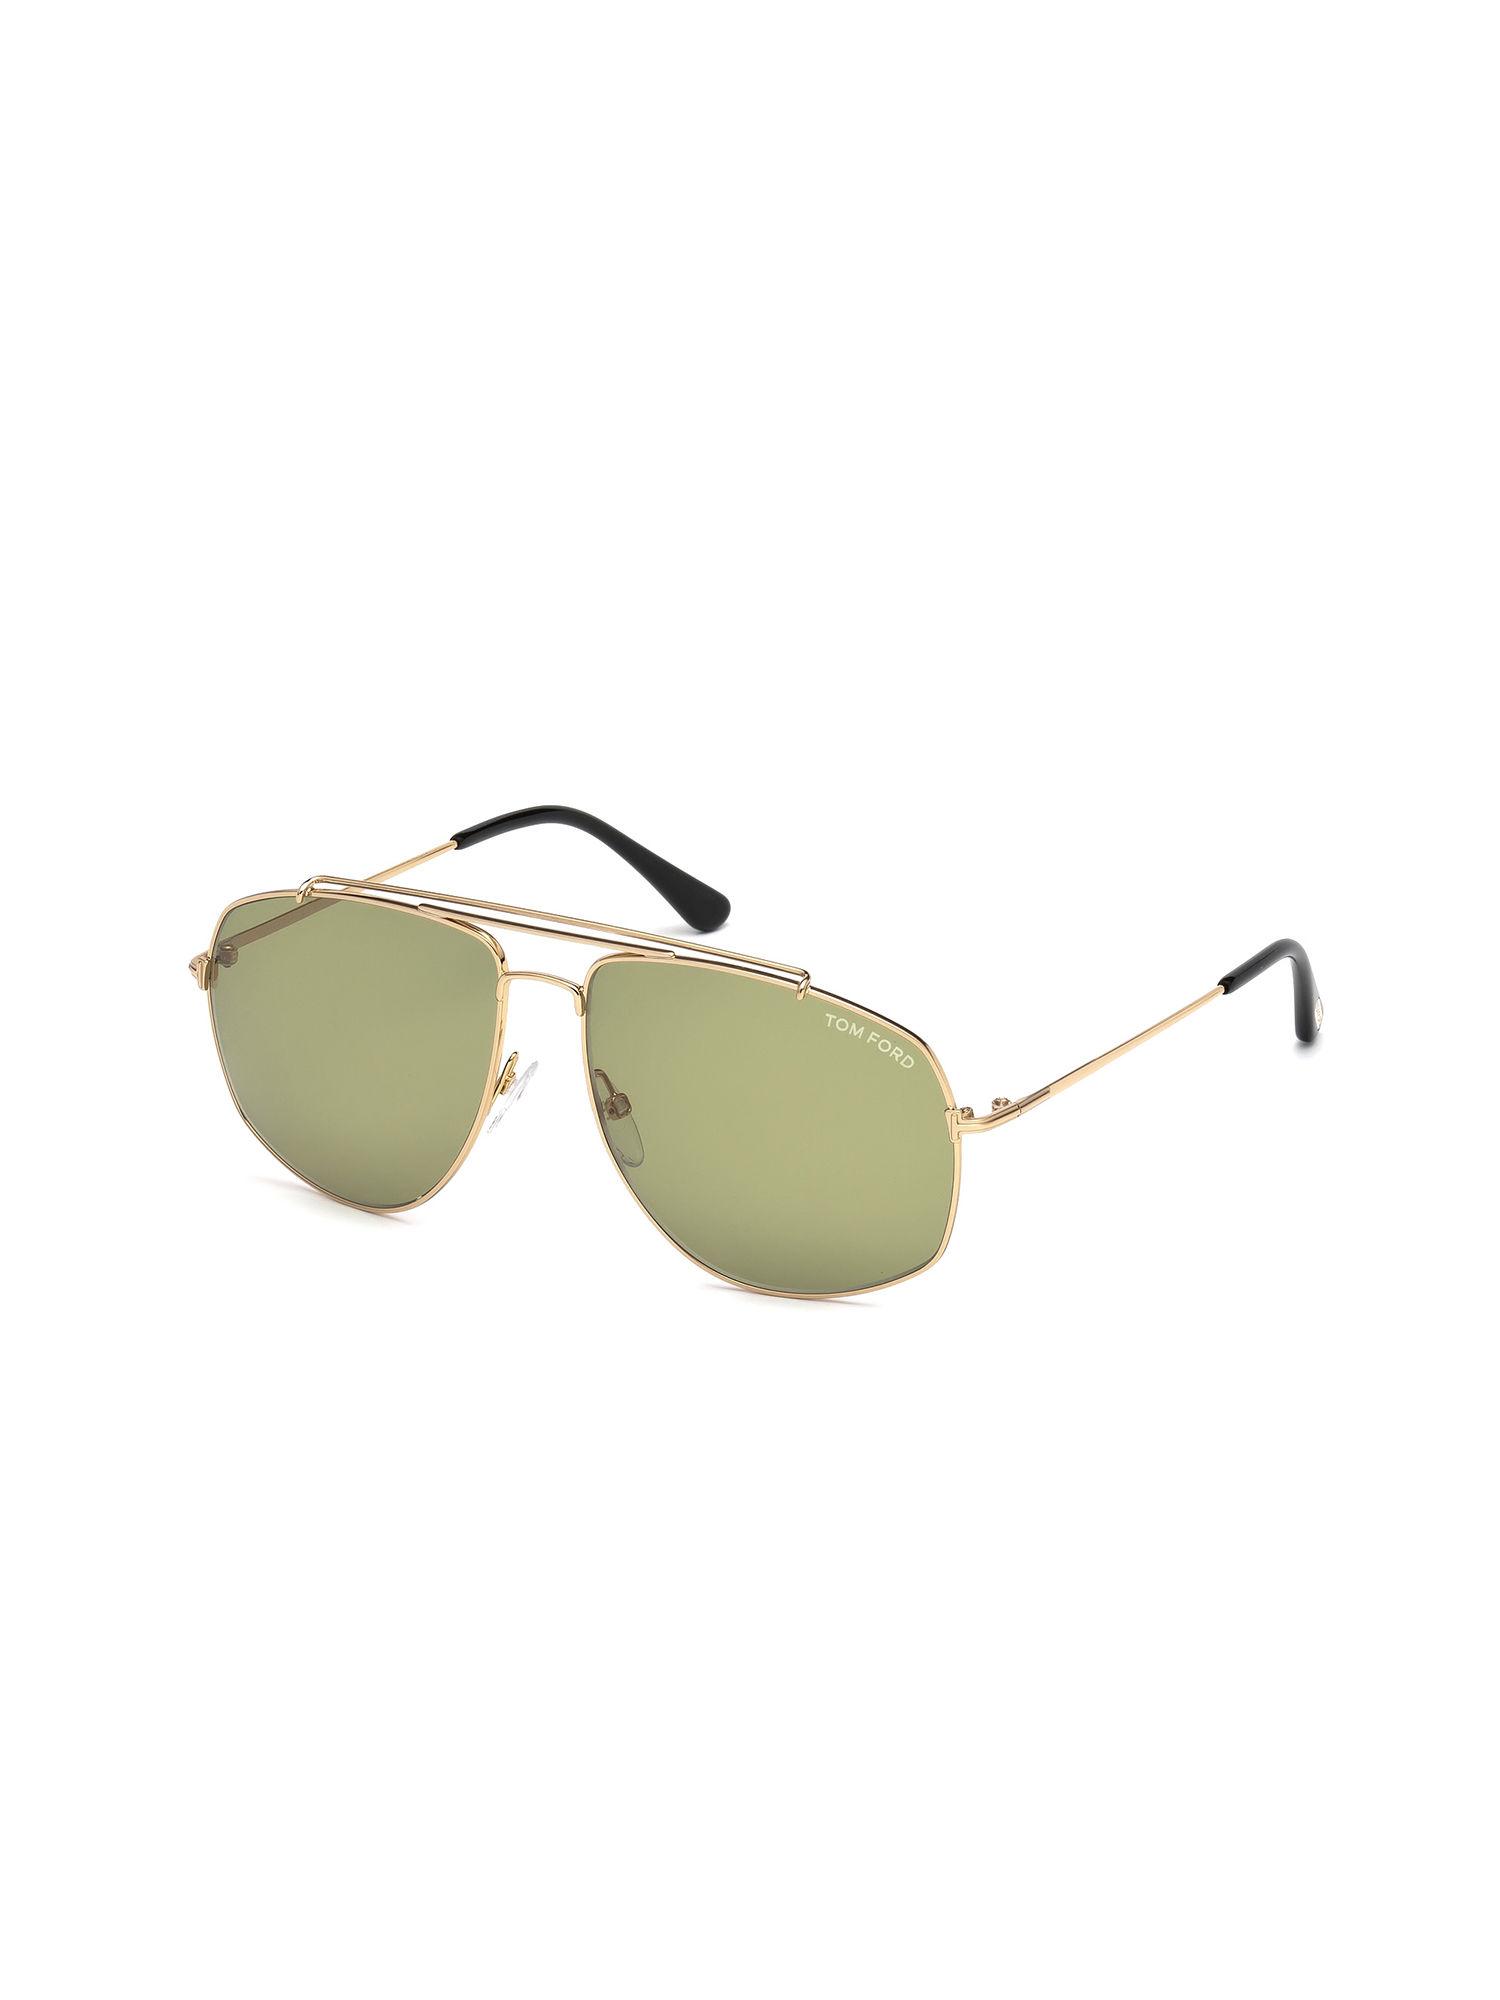 gold-oversized-sunglasses---ft0496-59-28n